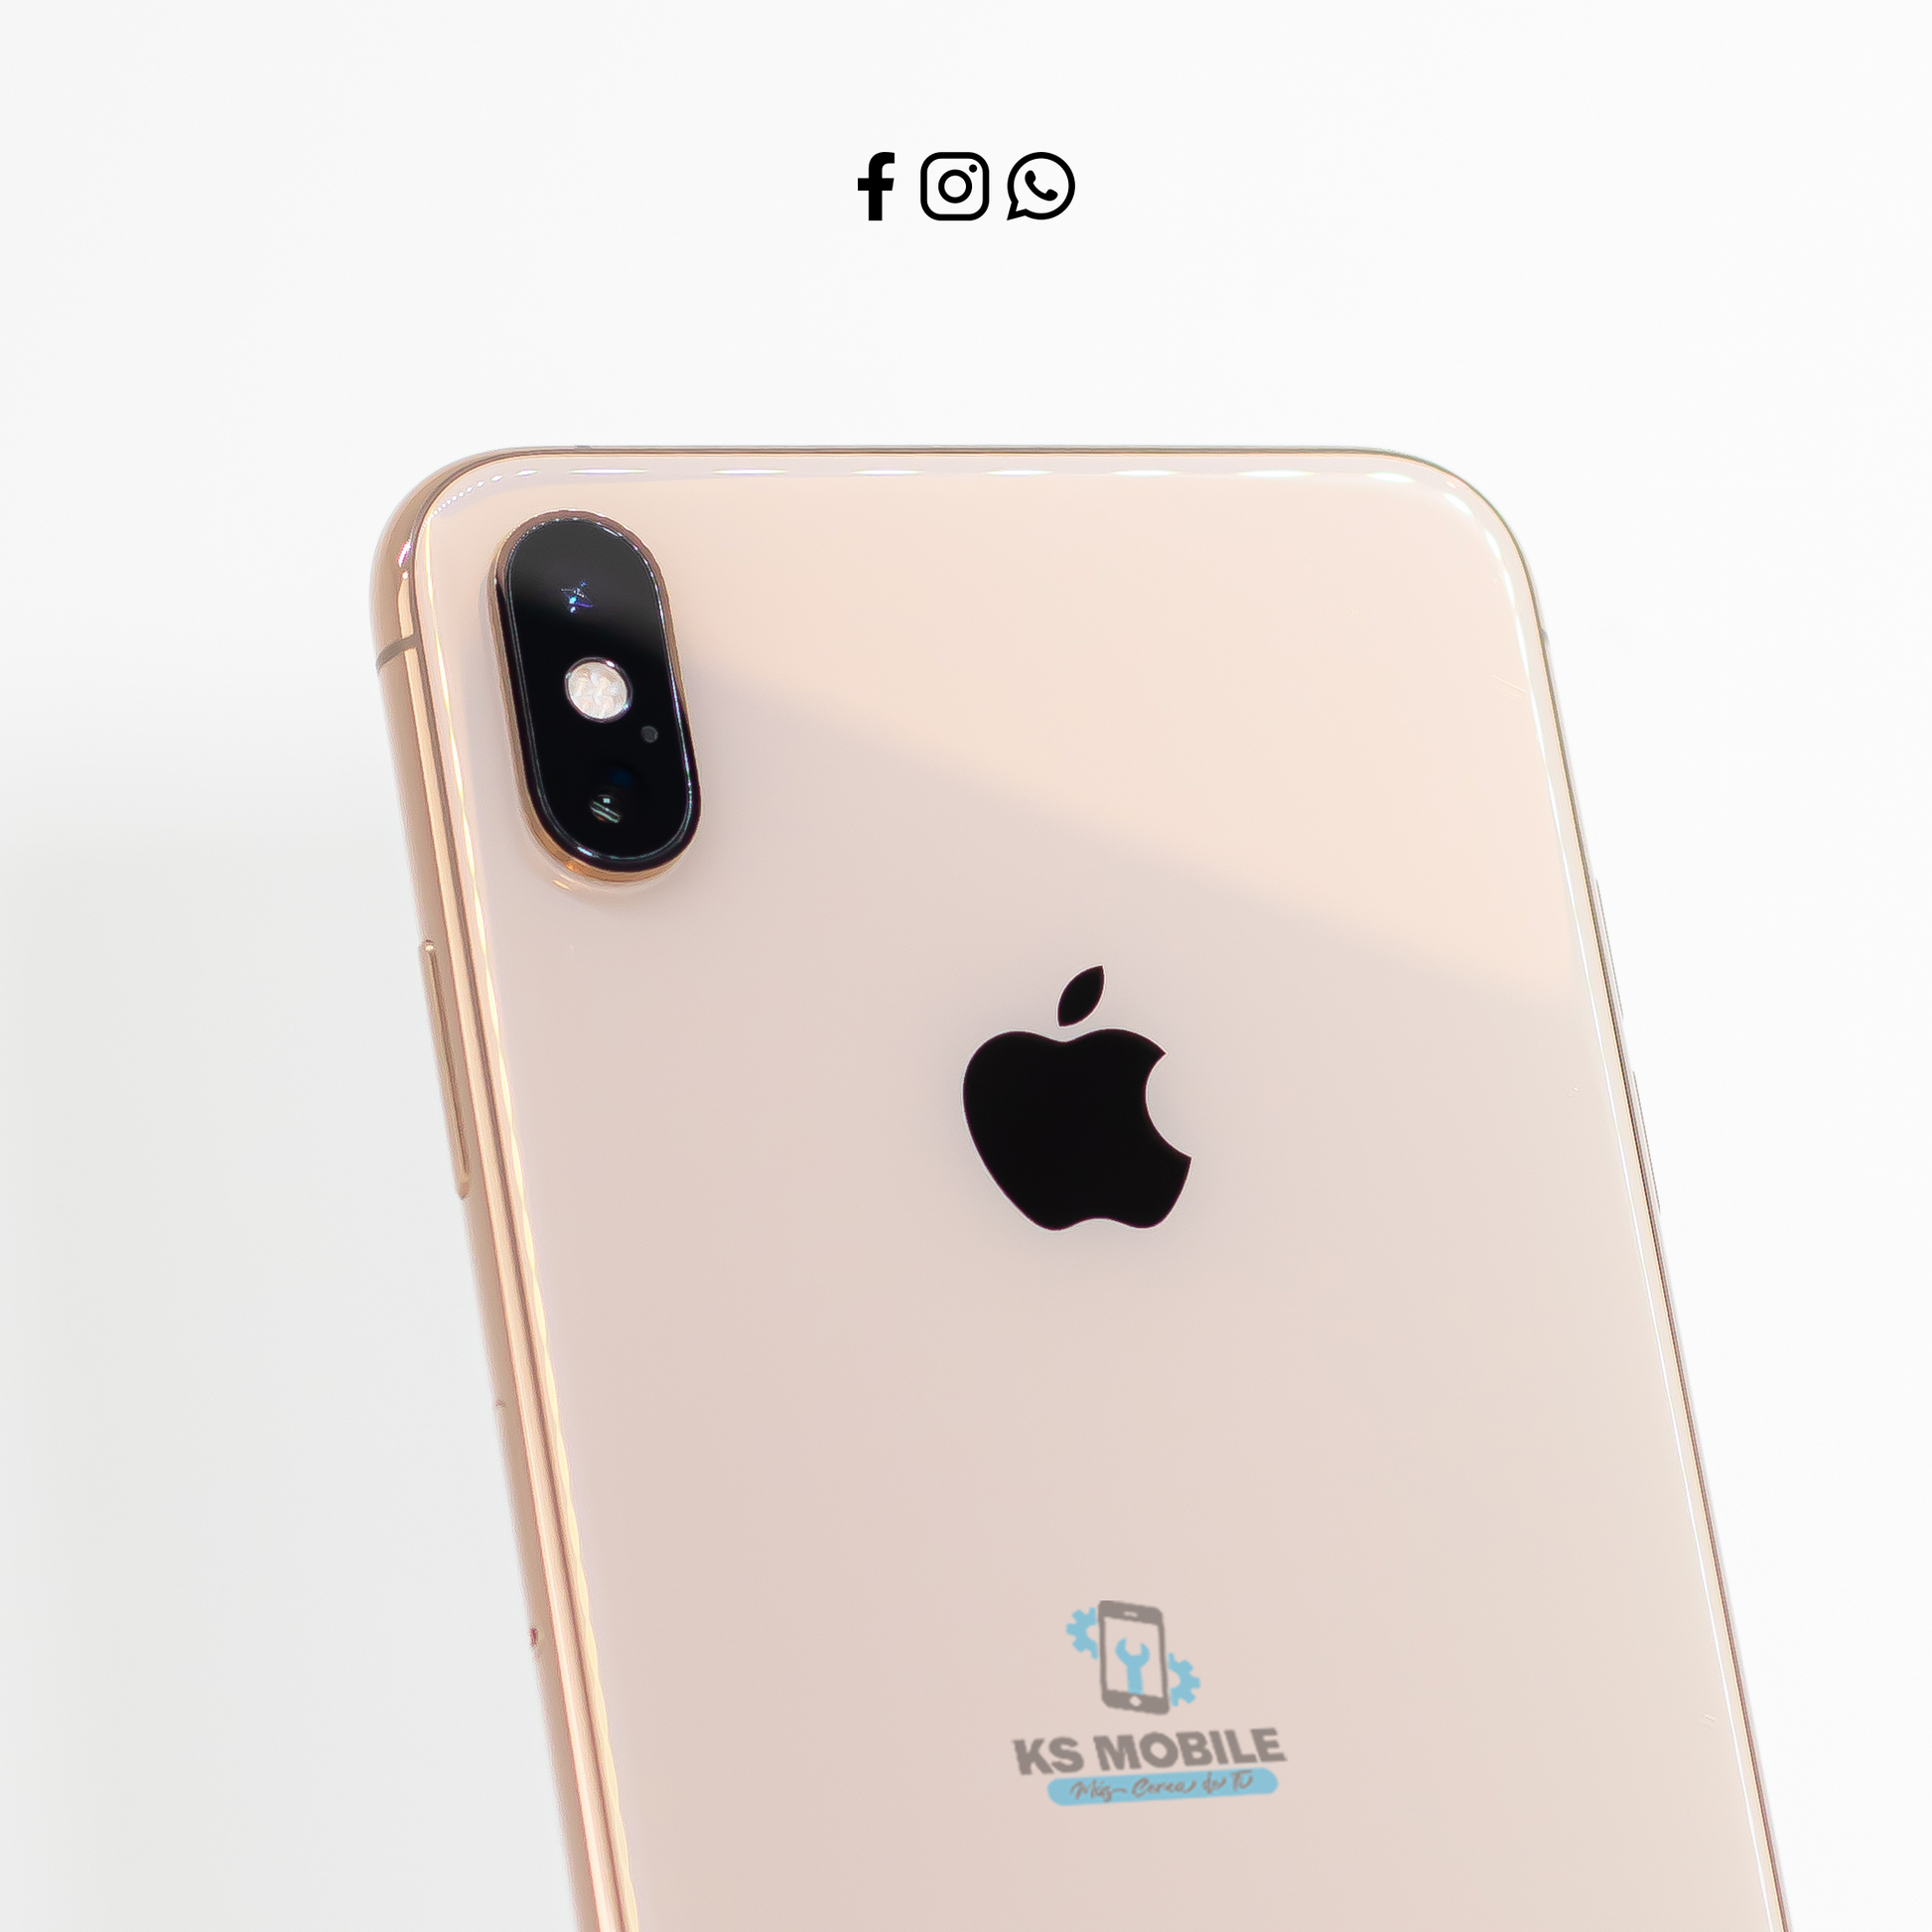 TecnoTienda Nicaragua - iPhone XS Max Rose Gold Semi-Nuevo Almacenamiento  64GB Precio : $620￼ Contáctanos al 81499300 Visítanos : Km. 10 Carretera  Vieja a León , Zona San Luis. Módulo 8. Realizamos